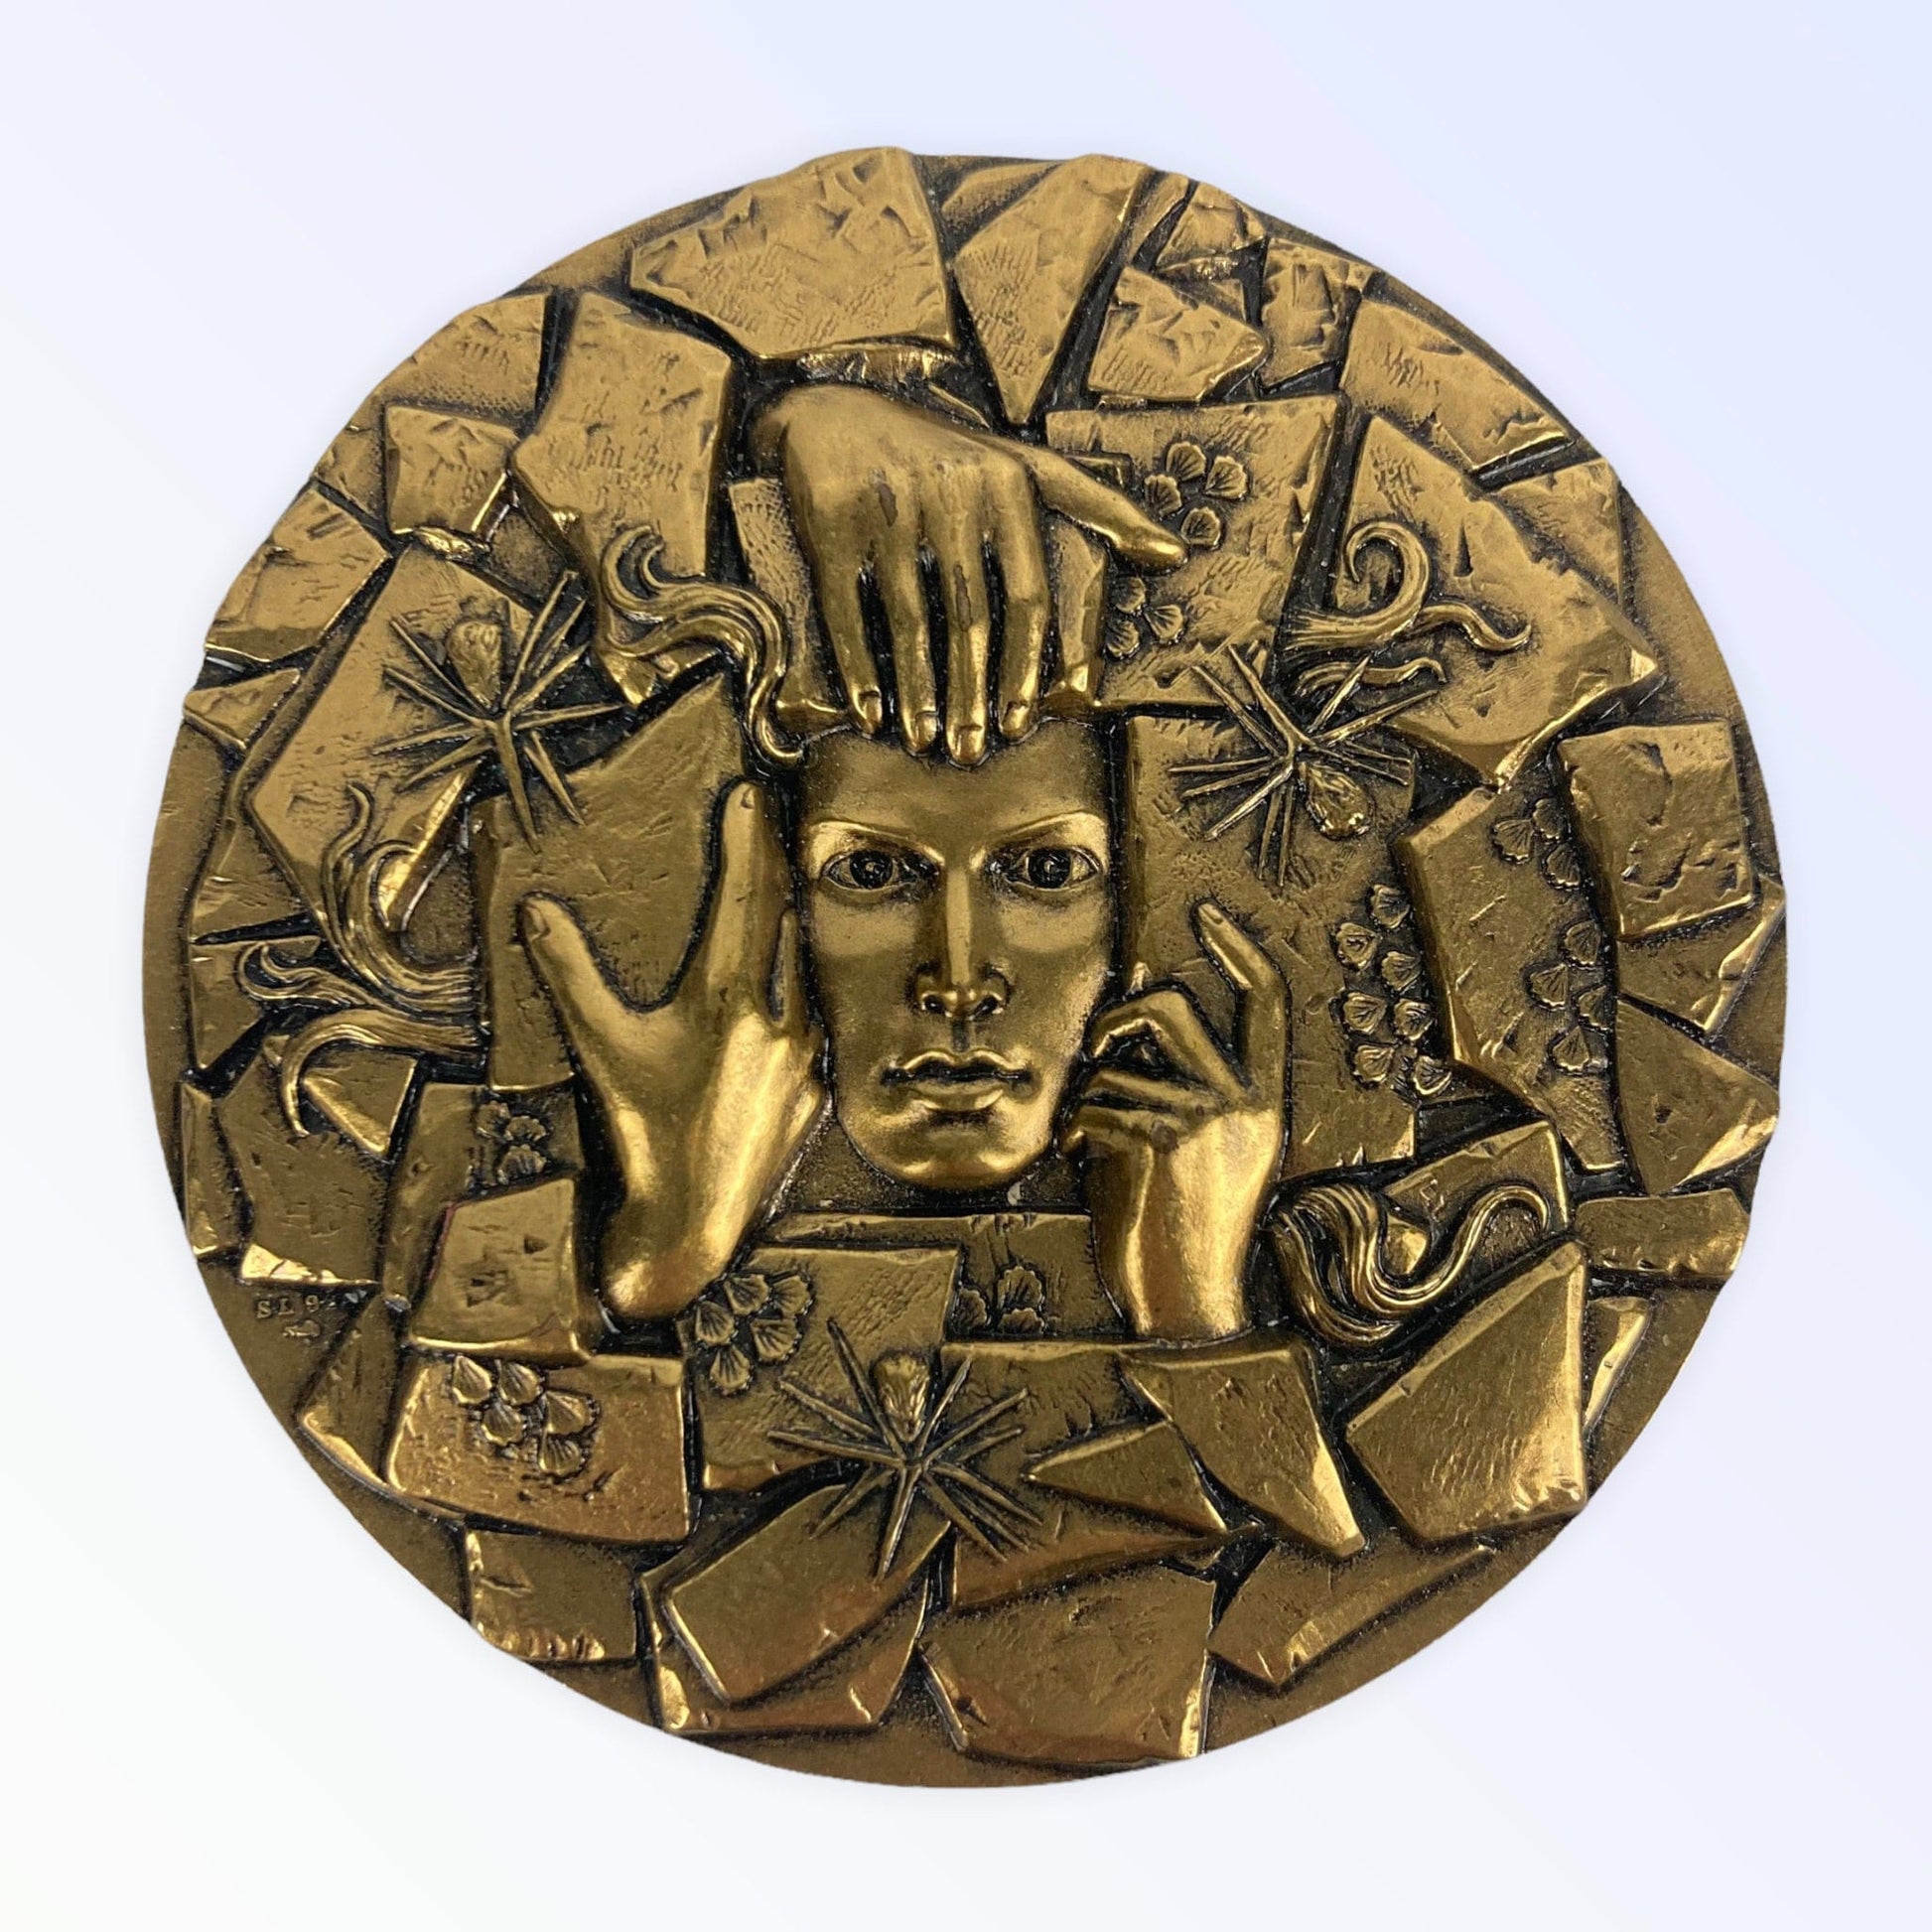 Médaille secours populaire bronze 1945/95 cinquantenaire